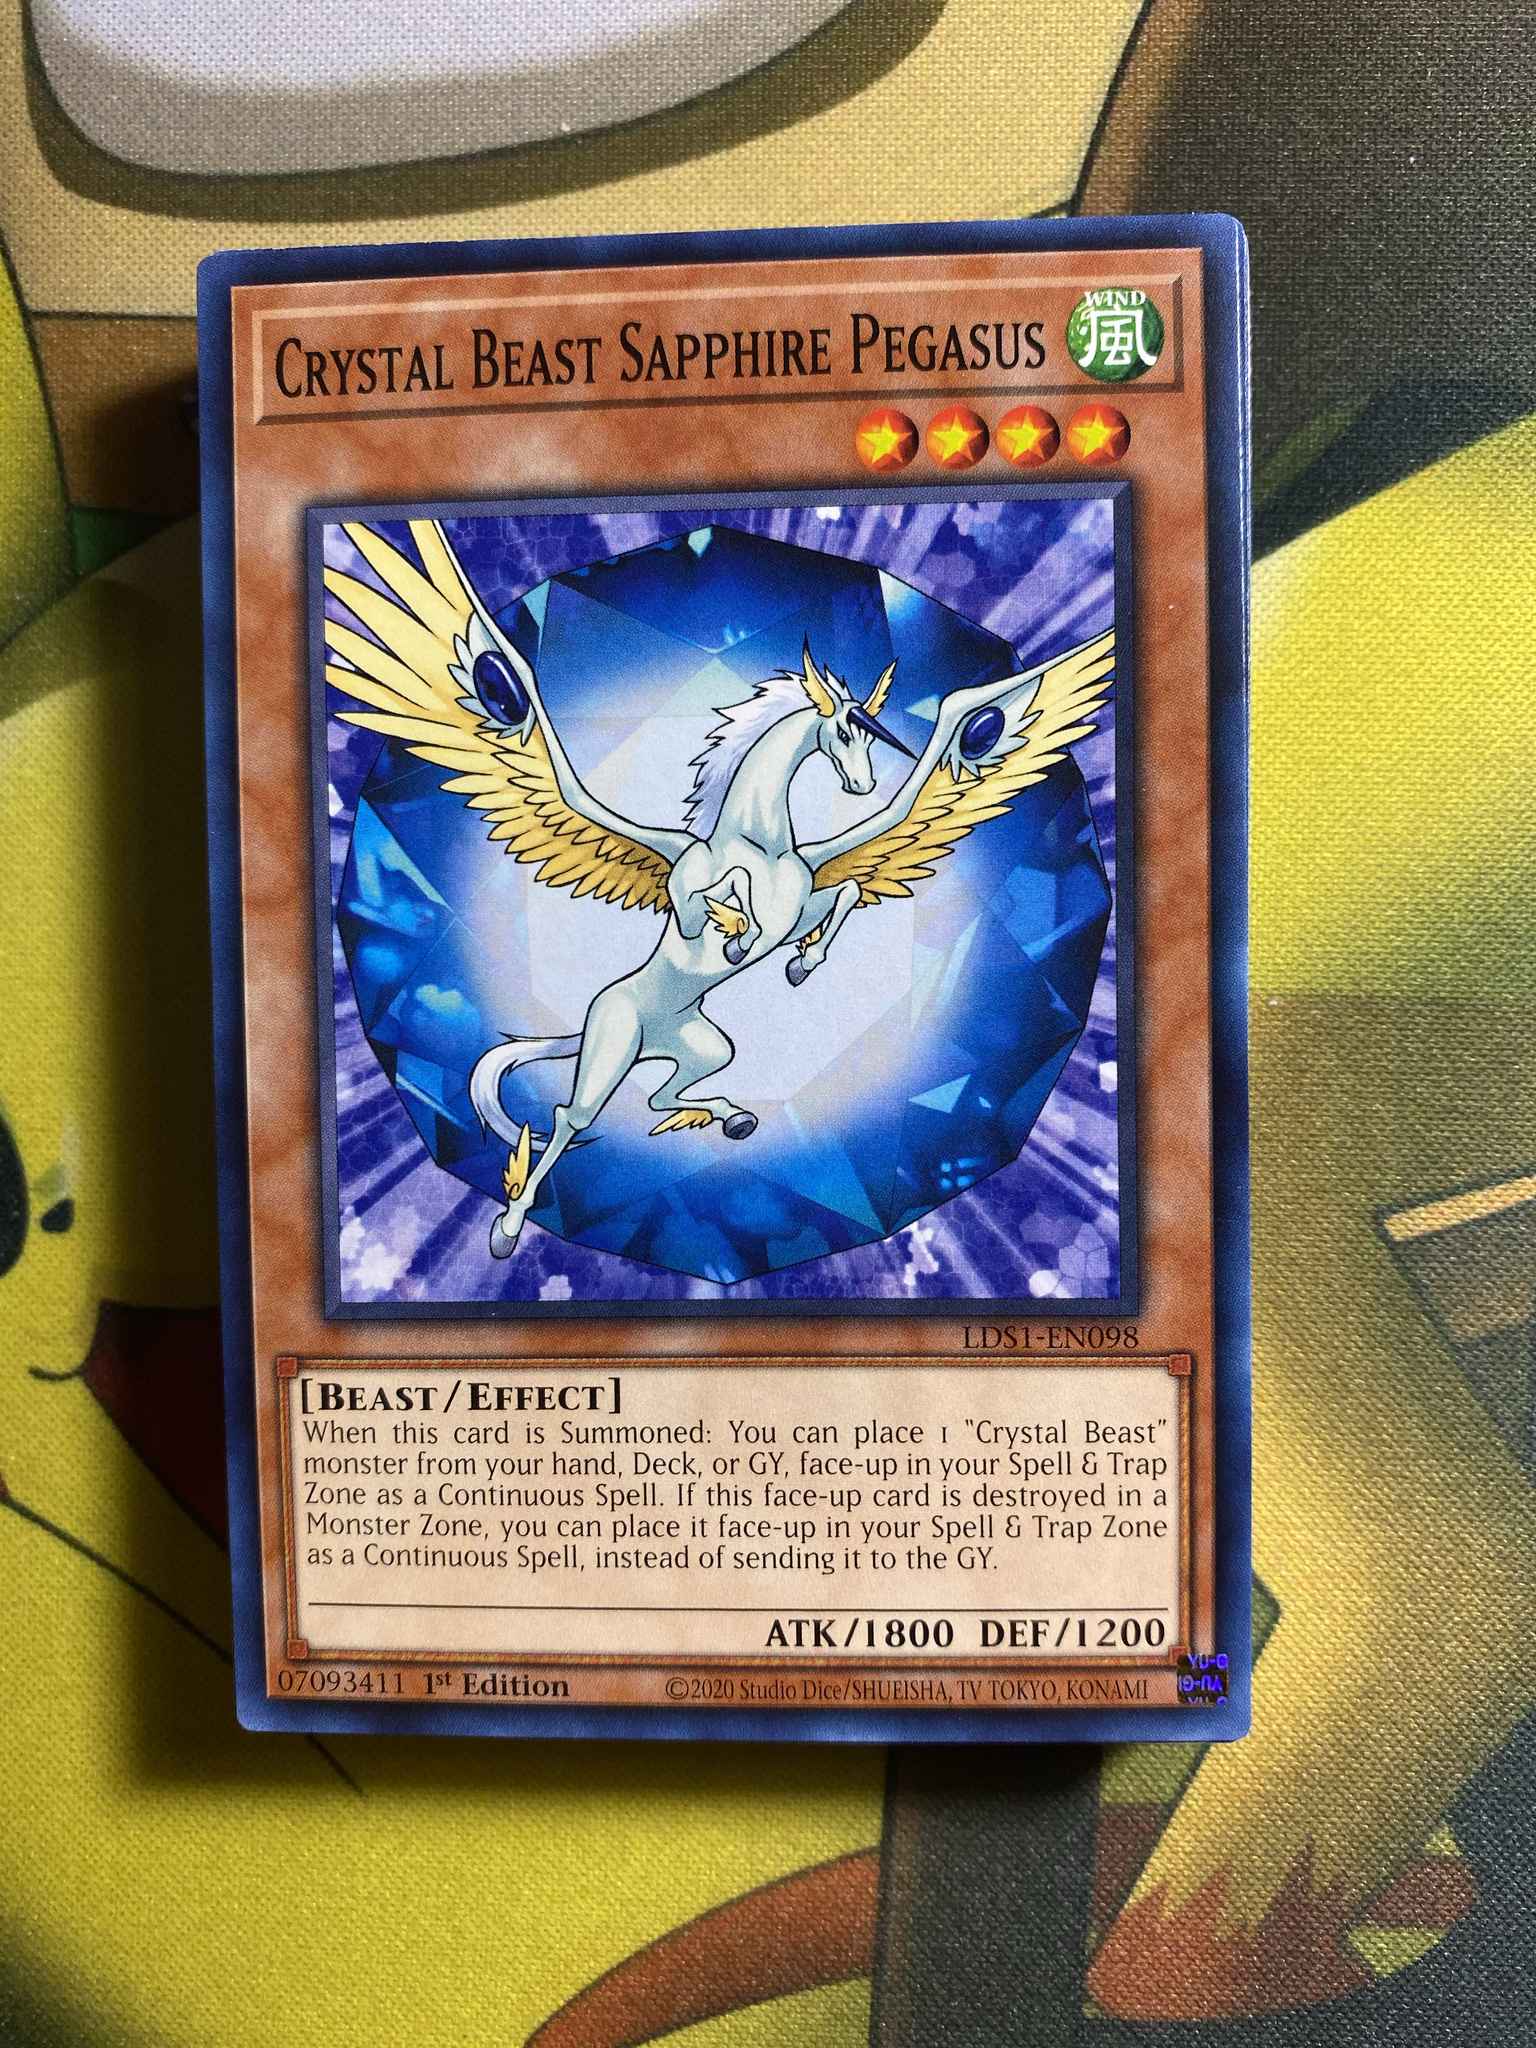 Crystal Beast Sapphire Pegasus Crystal Beast Sapphire Pegasus Legendary Duelists Season 1 Yugioh